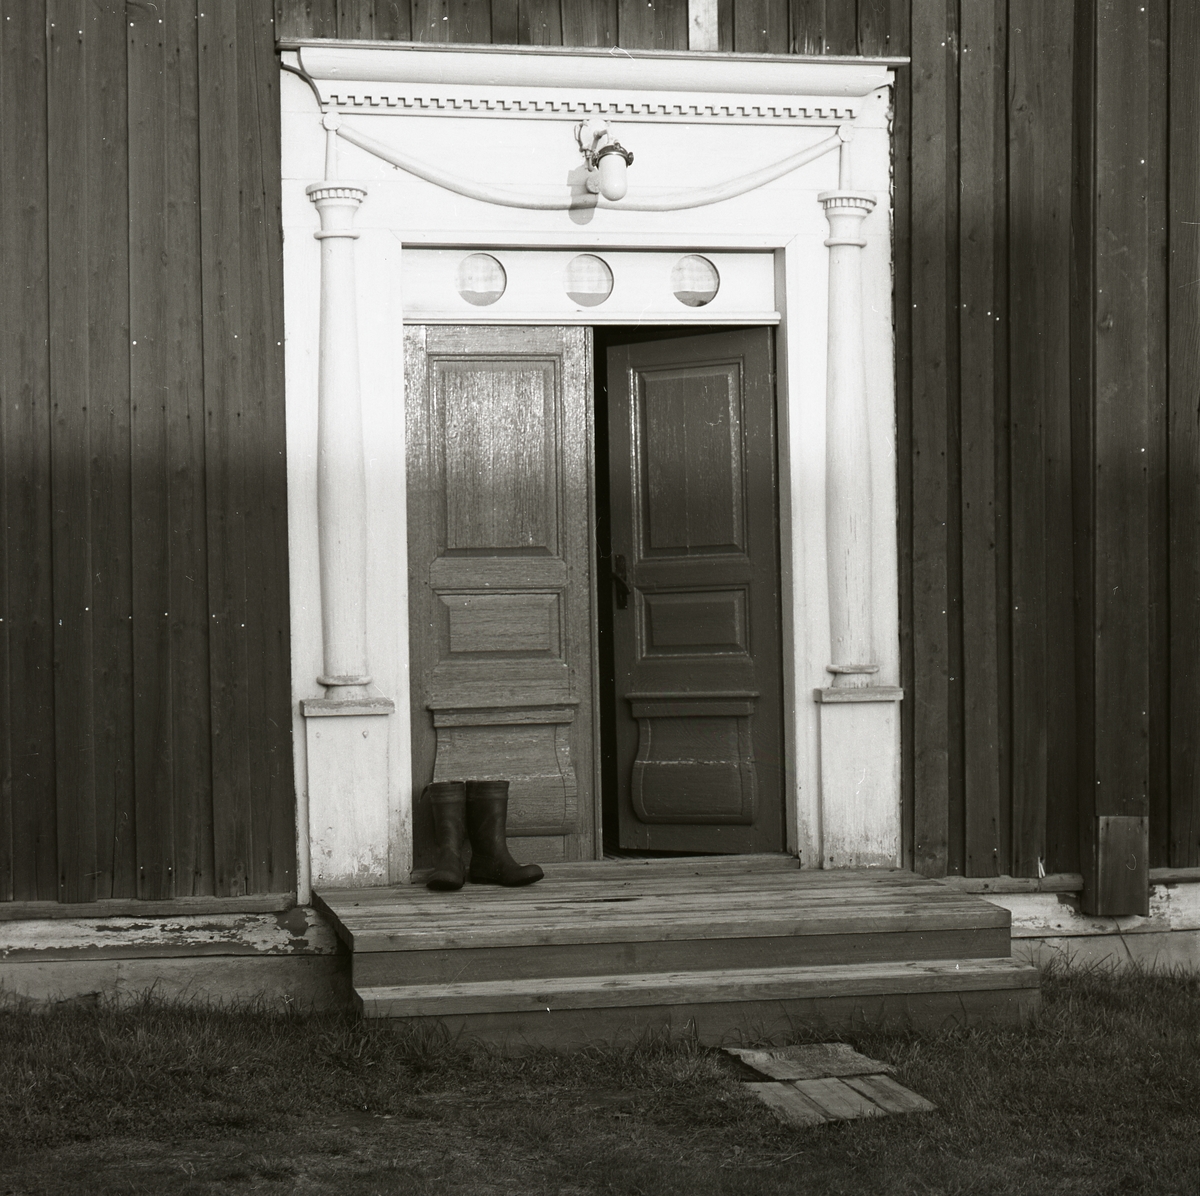 Ett par stövlar står på en trappa utanför en dörr. Dörren smyckad med snidad dekoration föreställande kolonner och girland, Boteå 1974.